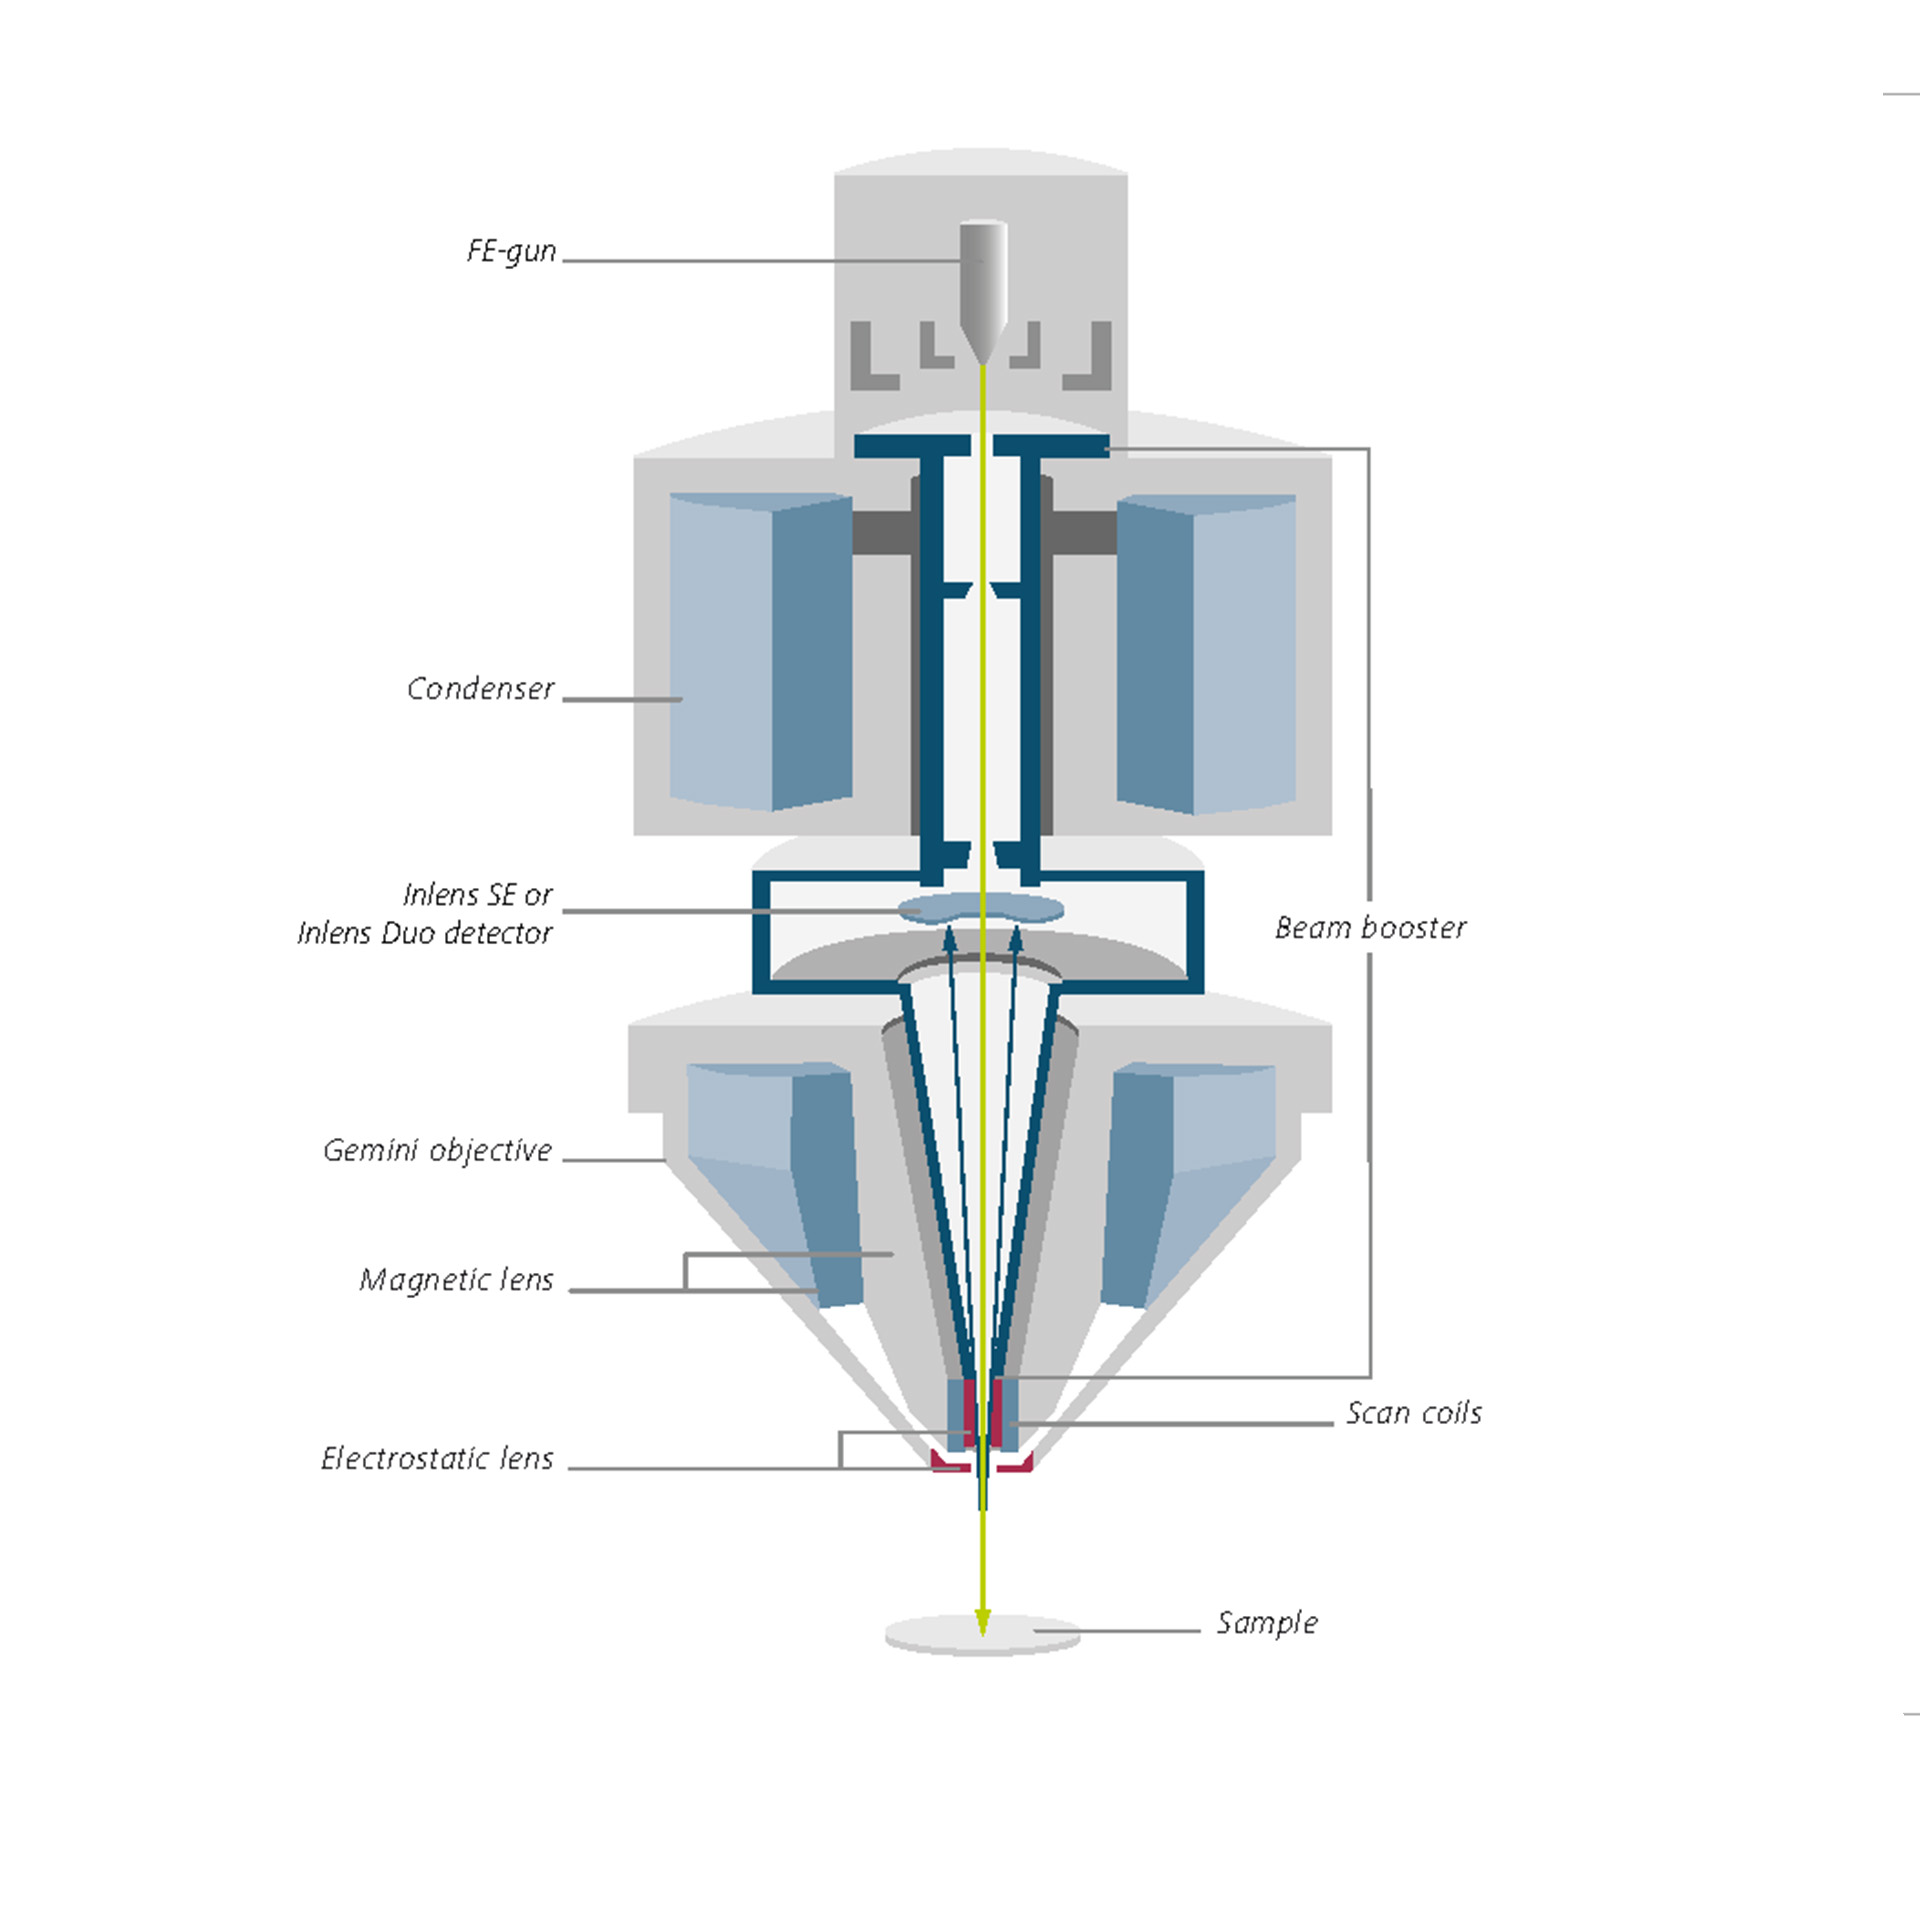 Gemini光学镜筒截面示意图，包含电子束推进器、Inlens探测器和Gemini物镜。 